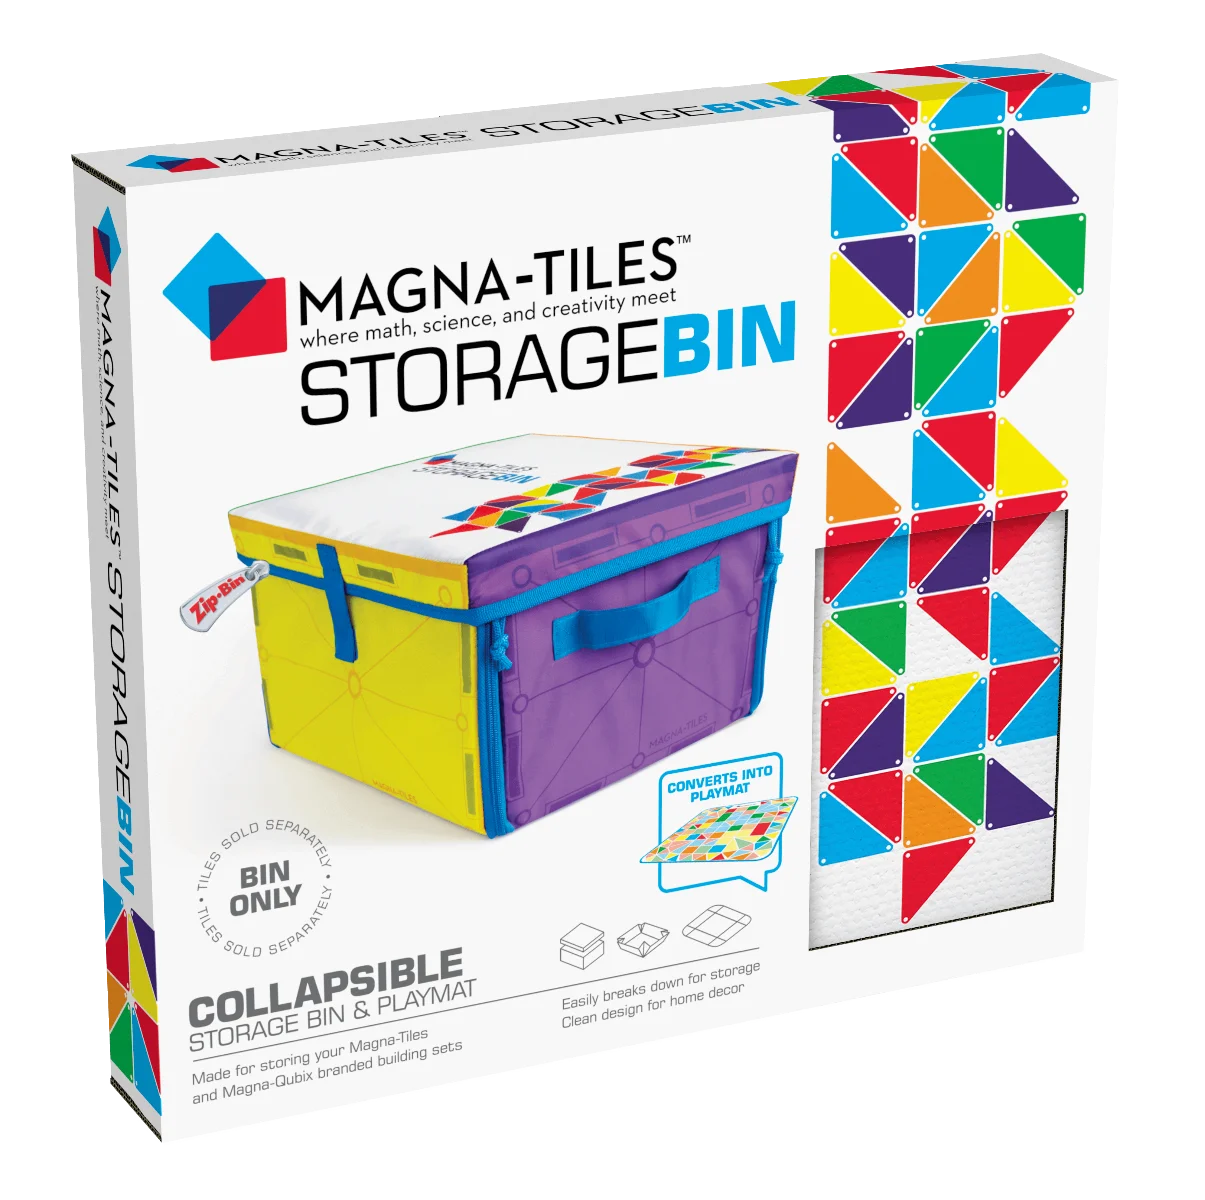 MAGNA-TILES Storage Bin